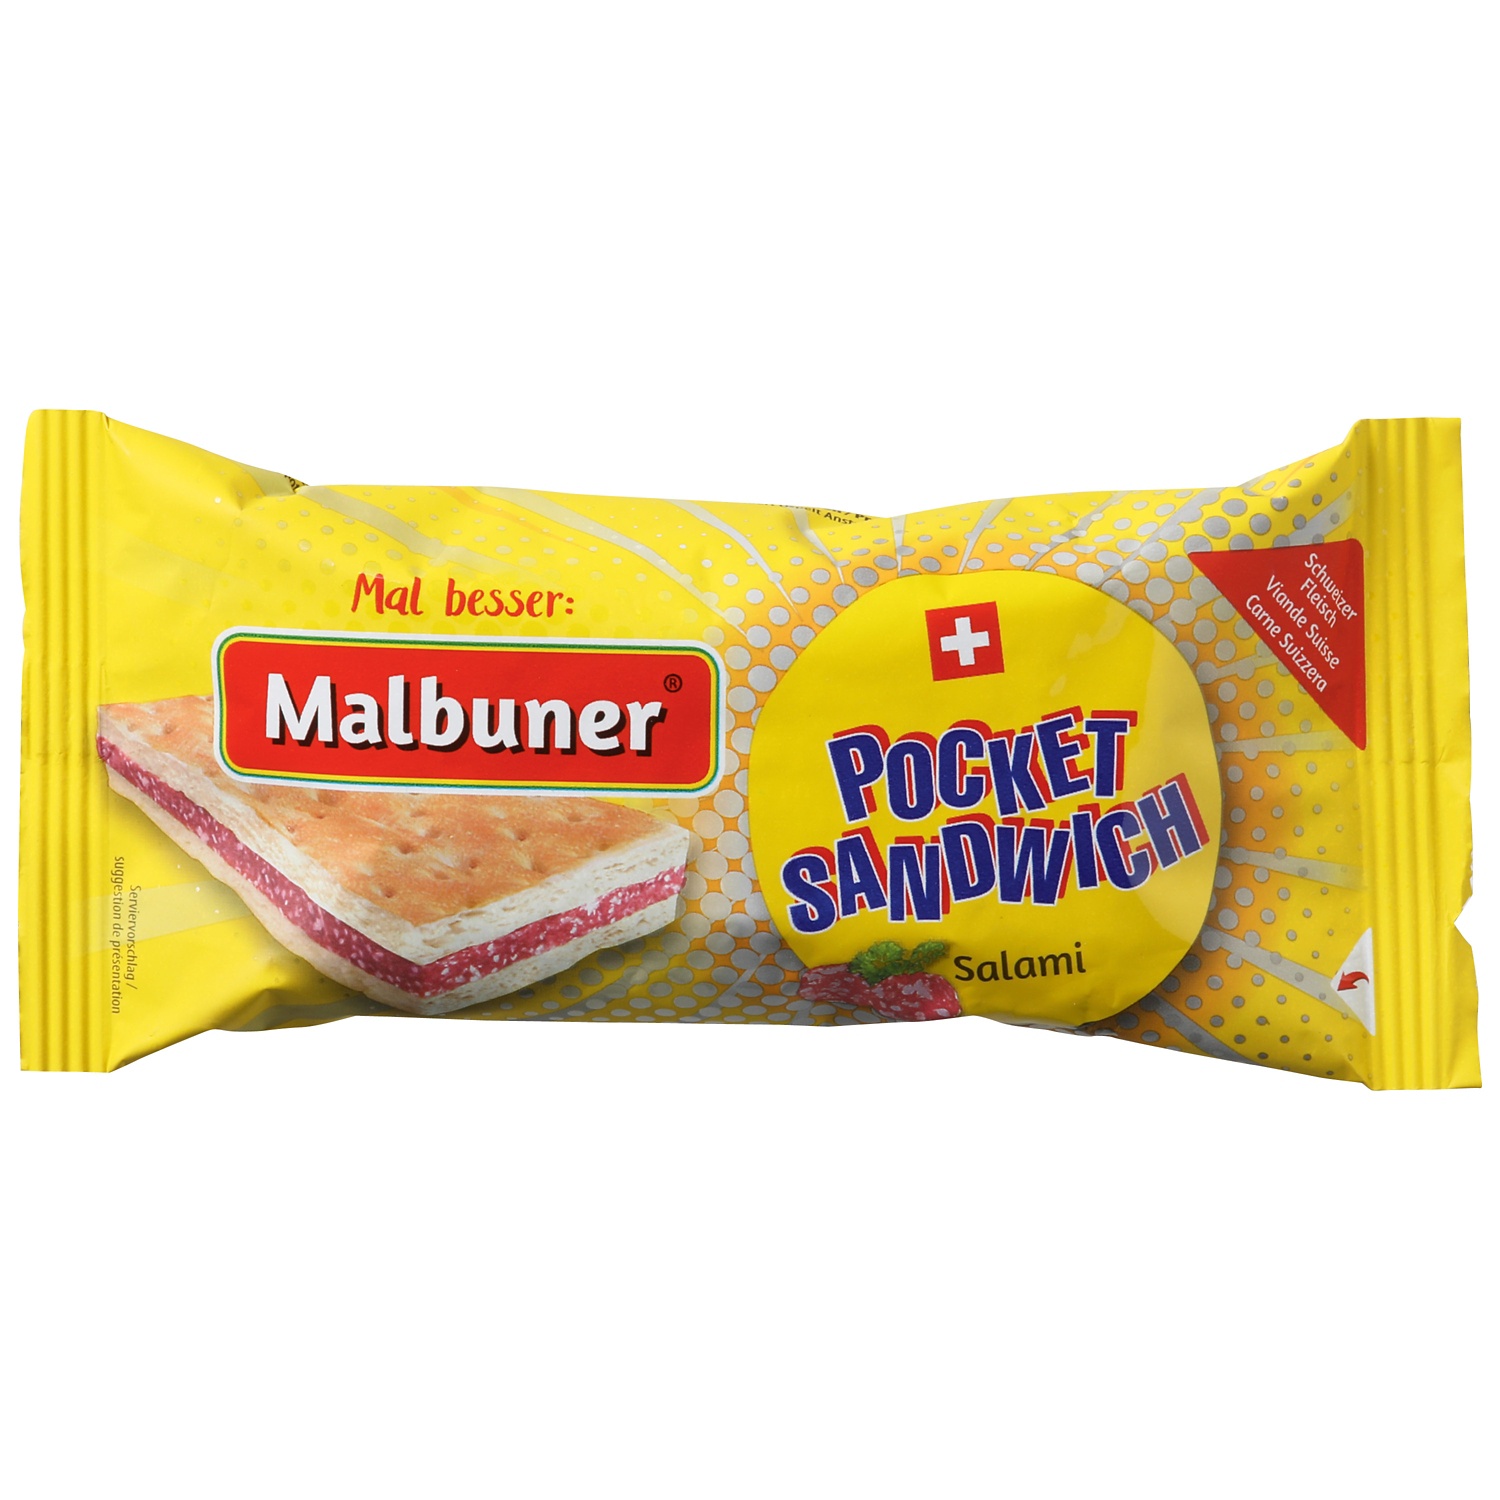 MALBUNER Spezialitäten, Pocket Sandwich Salami